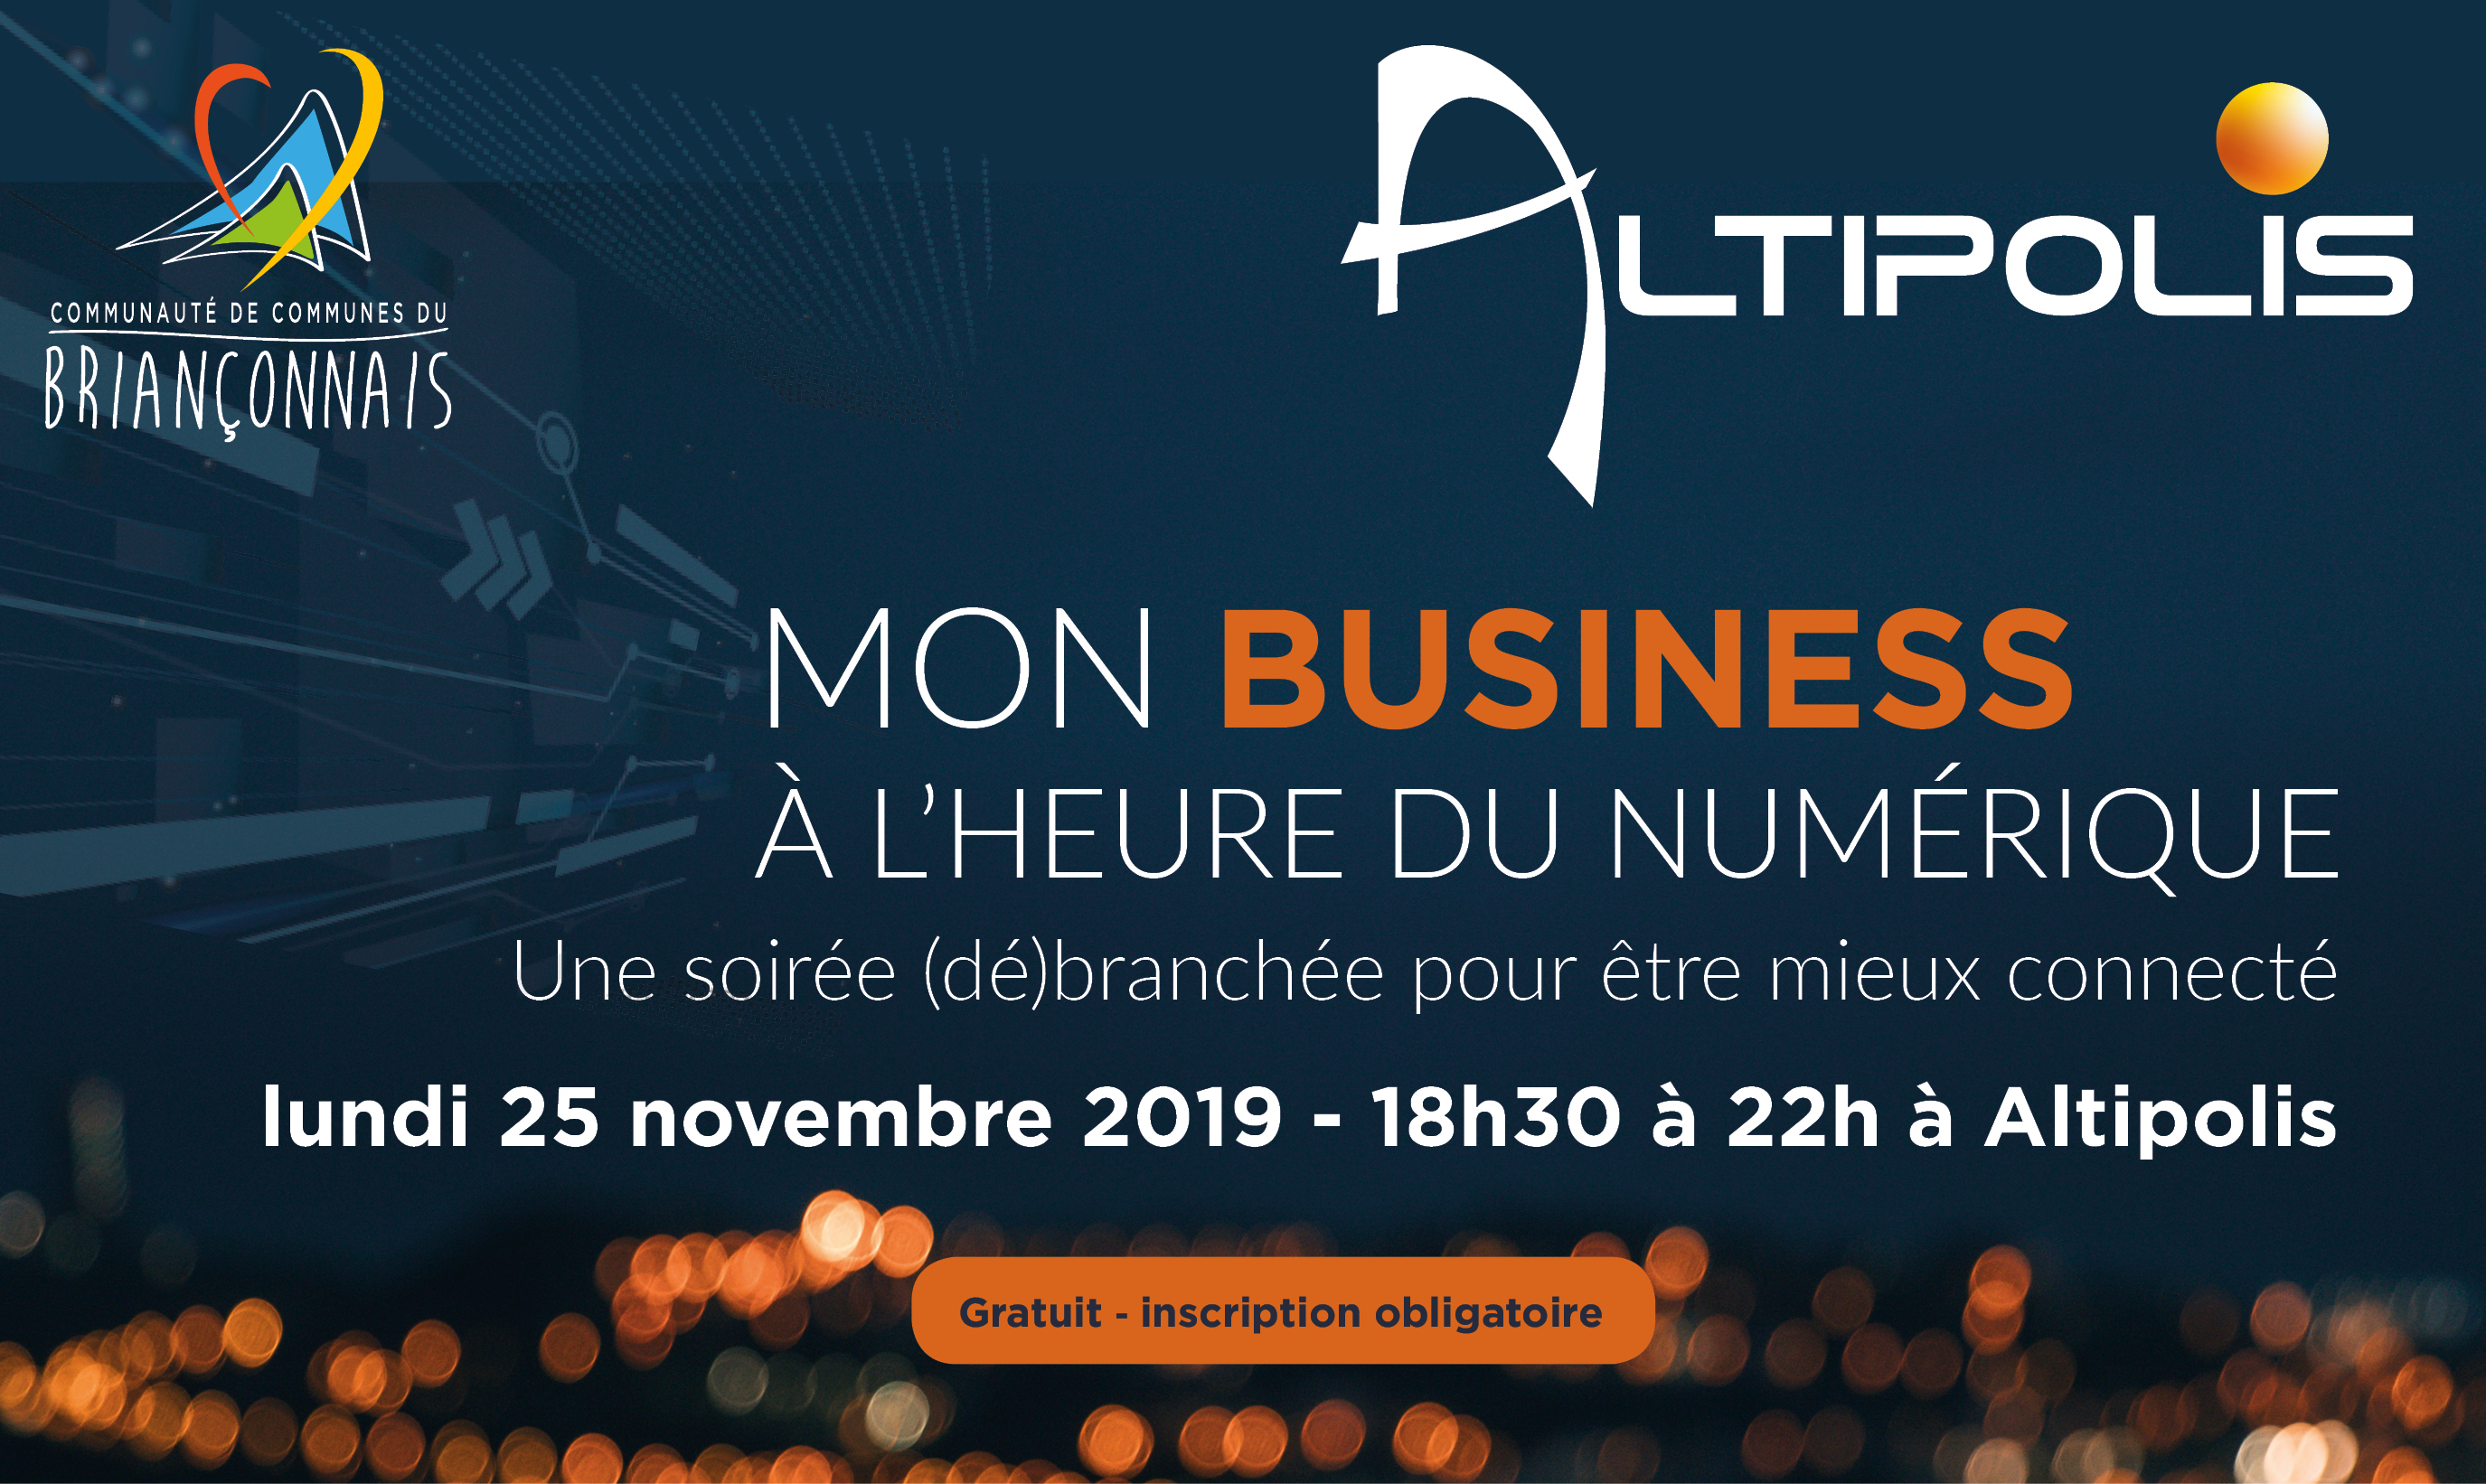 altipolis_mon_business_a_lheure_du_numerique_web10.jpg